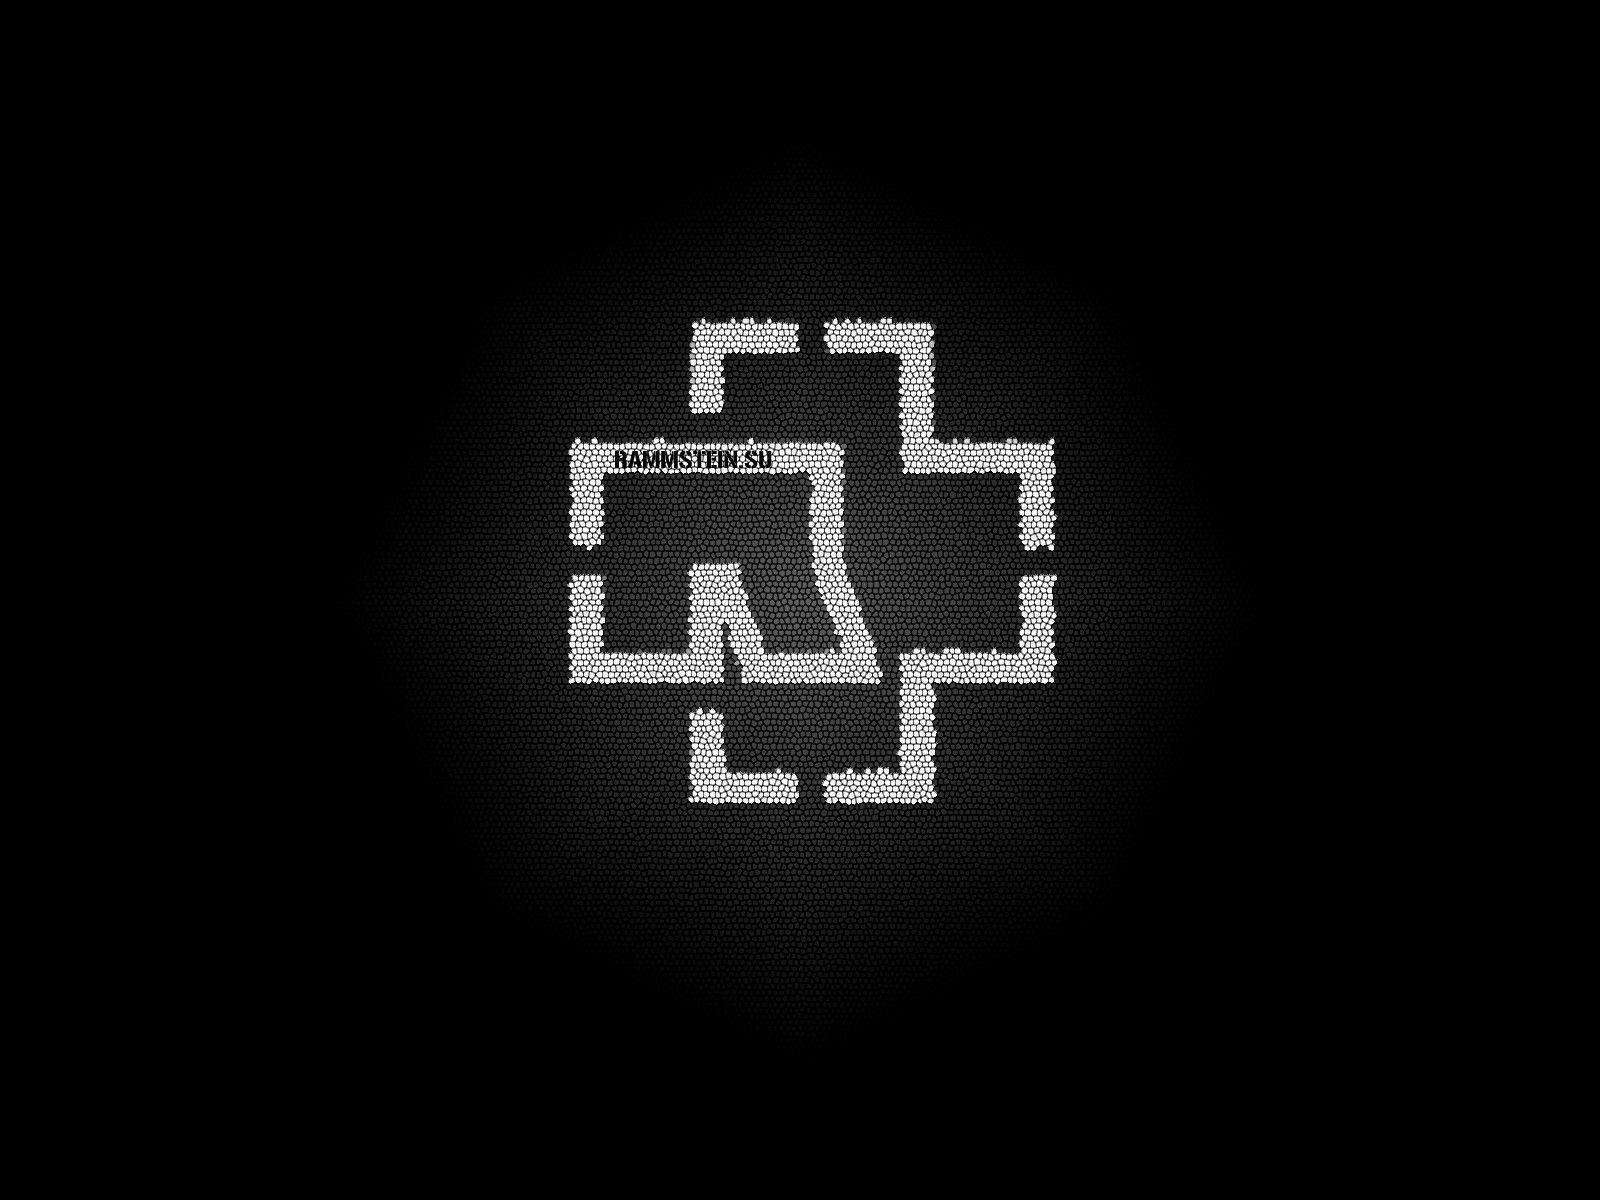 Rammstein Logo Wallpaper